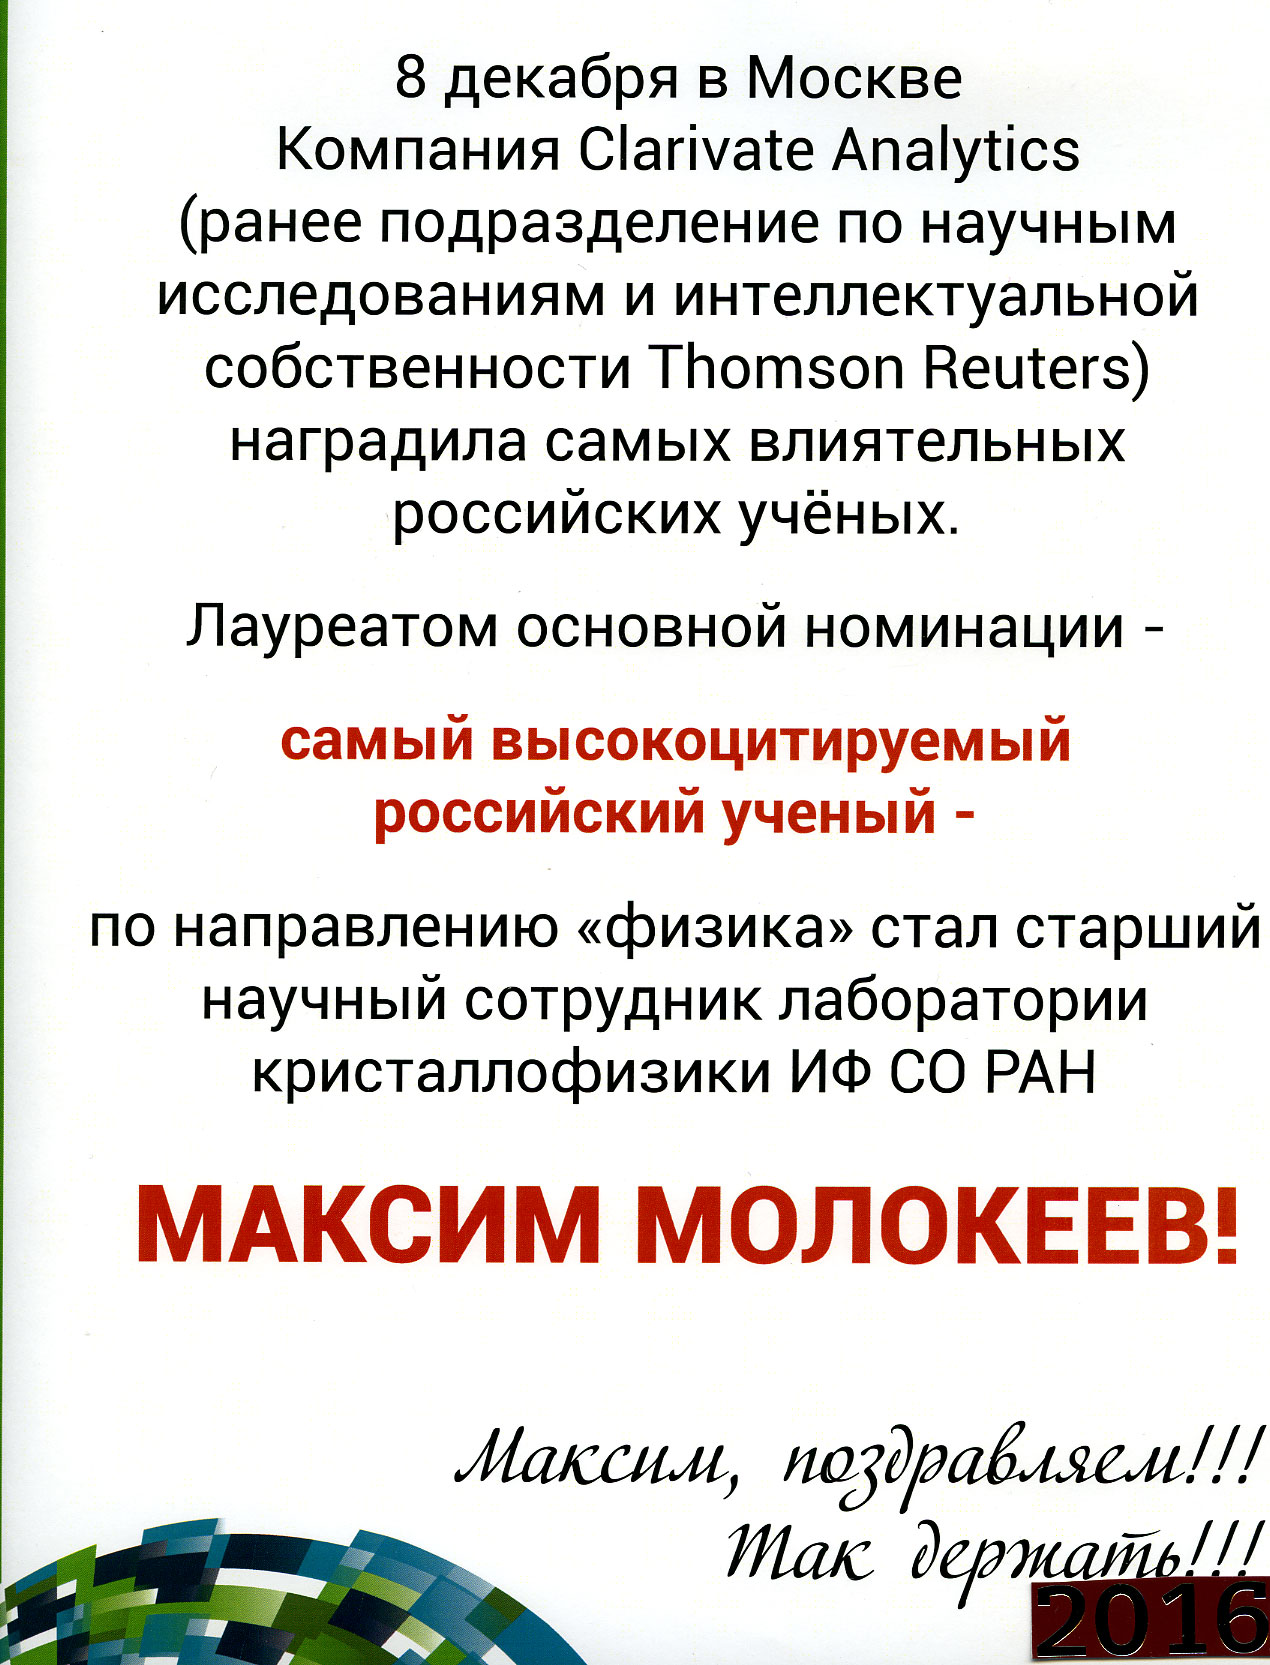 Поздравление Молокееву Максиму